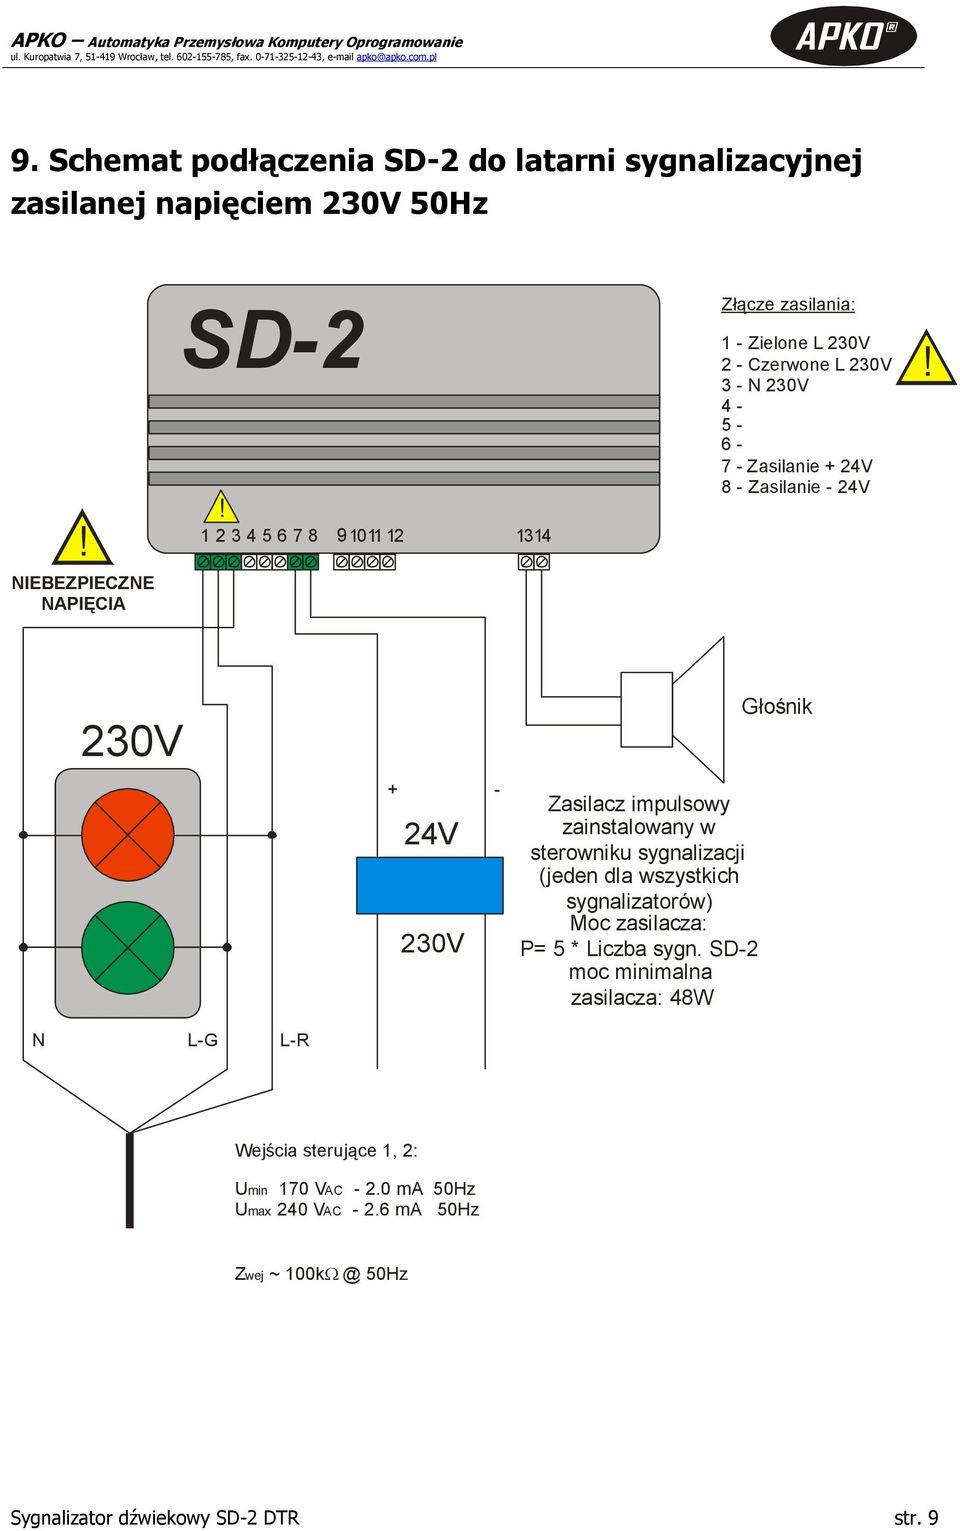 230V + - 24V 230V Zasilacz impulsowy zainstalowany w sterowniku sygnalizacji (jeden dla wszystkich sygnalizatorów) Moc zasilacza: P= 5 * Liczba sygn.